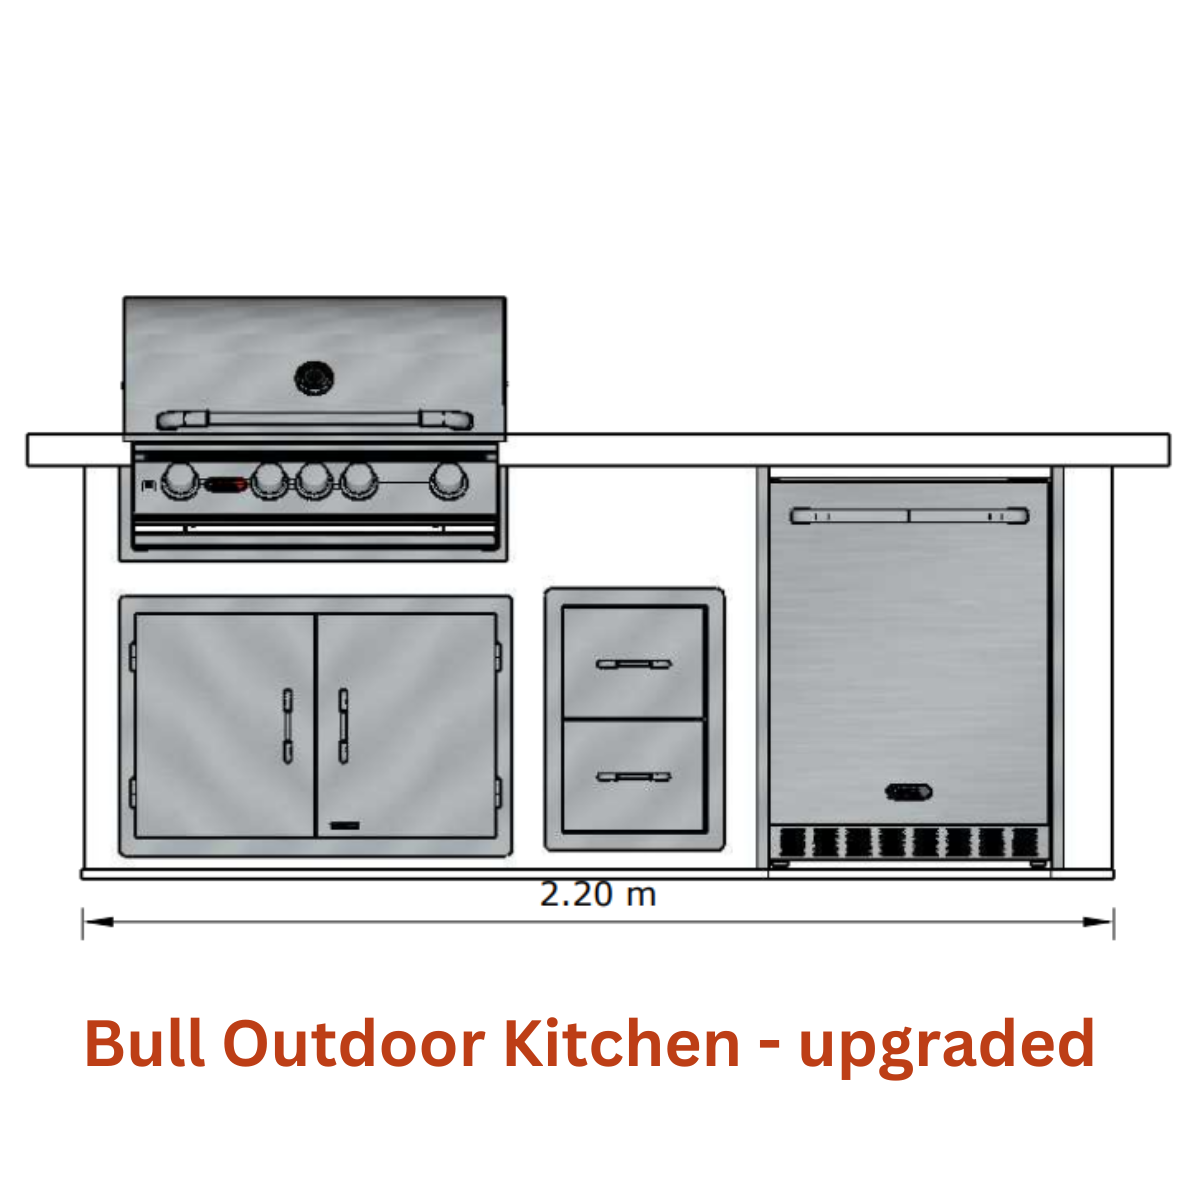 Bull Outdoor Kitchen example - speak to Kitchen in the Garden to design your outdoor kitchen